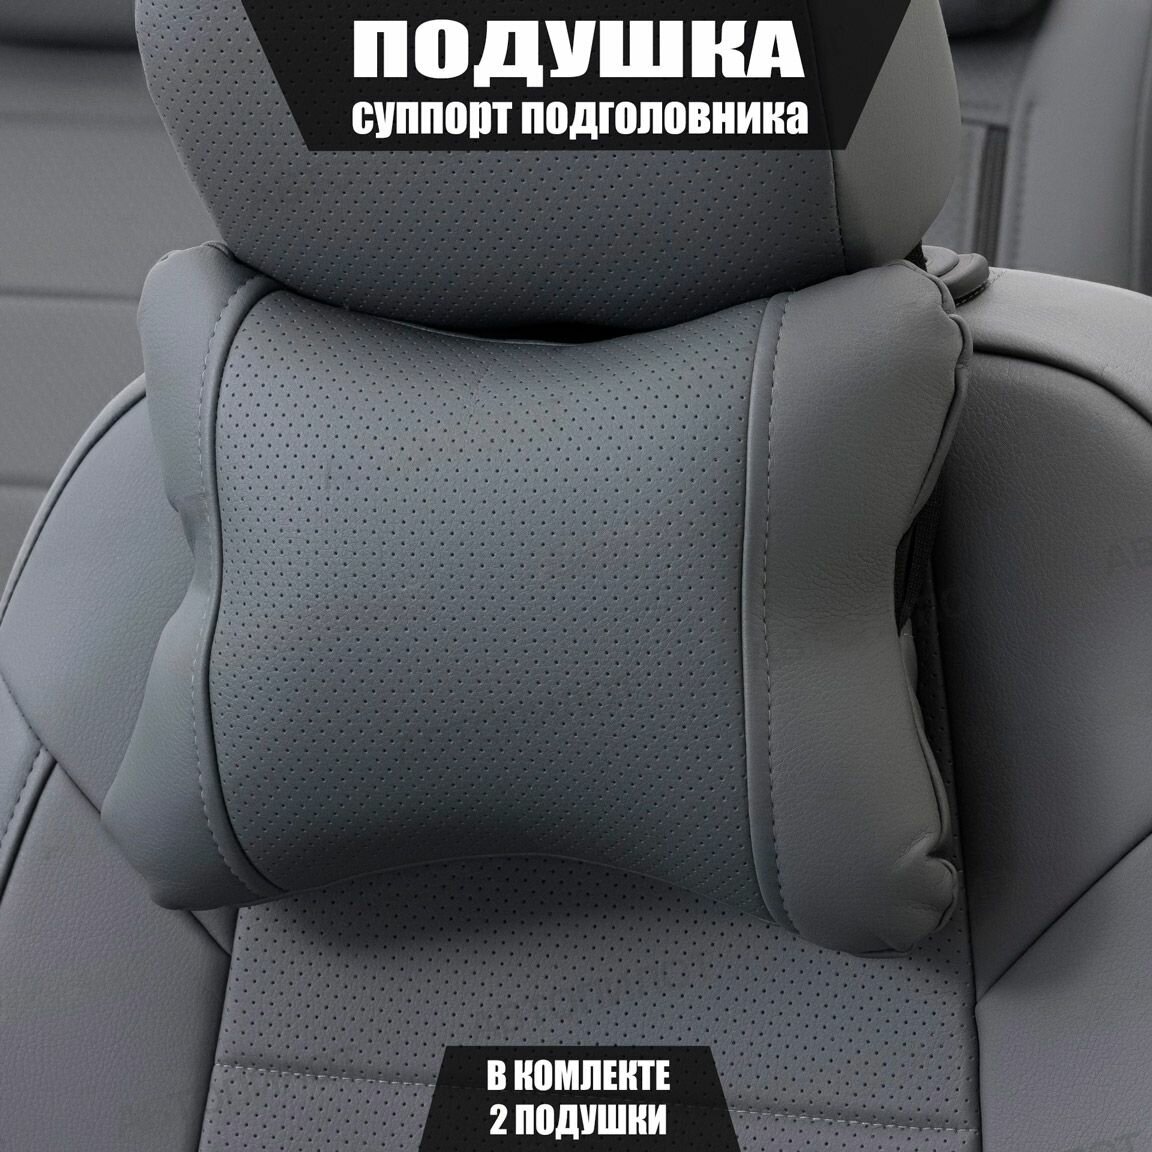 Подушки под шею (суппорт подголовника) для Киа КаИкс5 (2016 - 2018) внедорожник 5 дверей / Kia KX5, Экокожа, 2 подушки, Серый